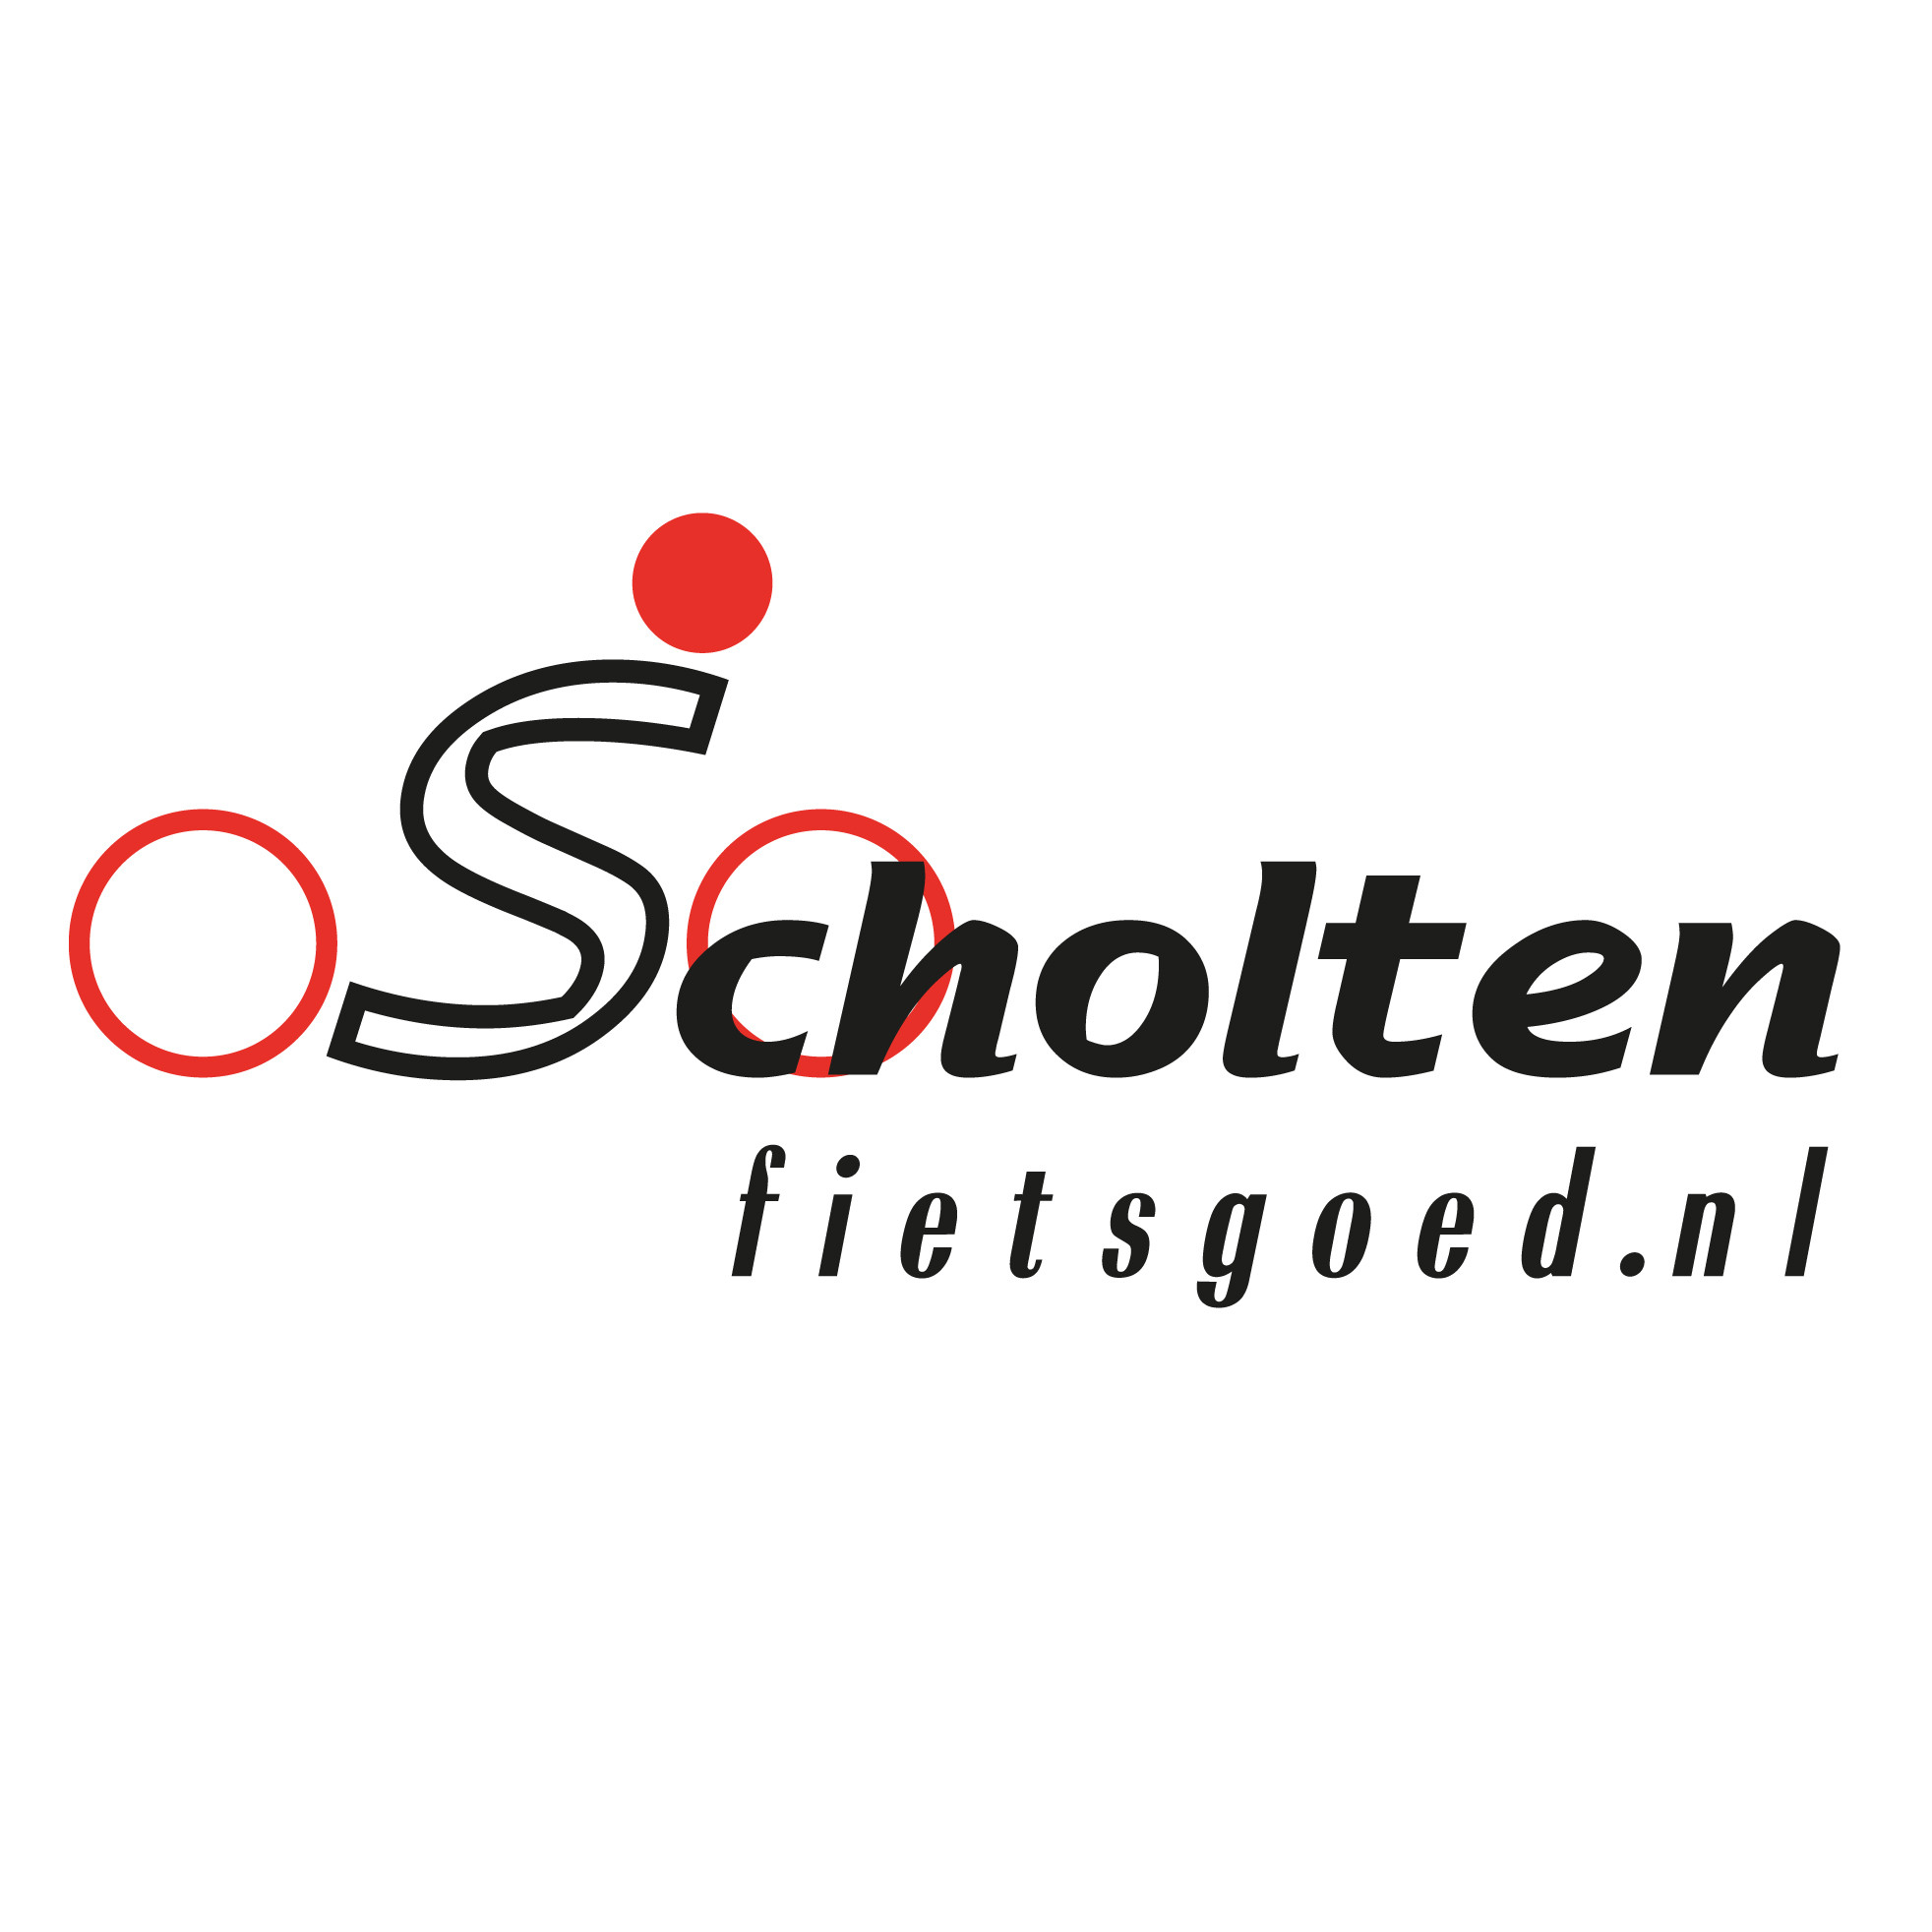 Scholten Fietsgoed.nl